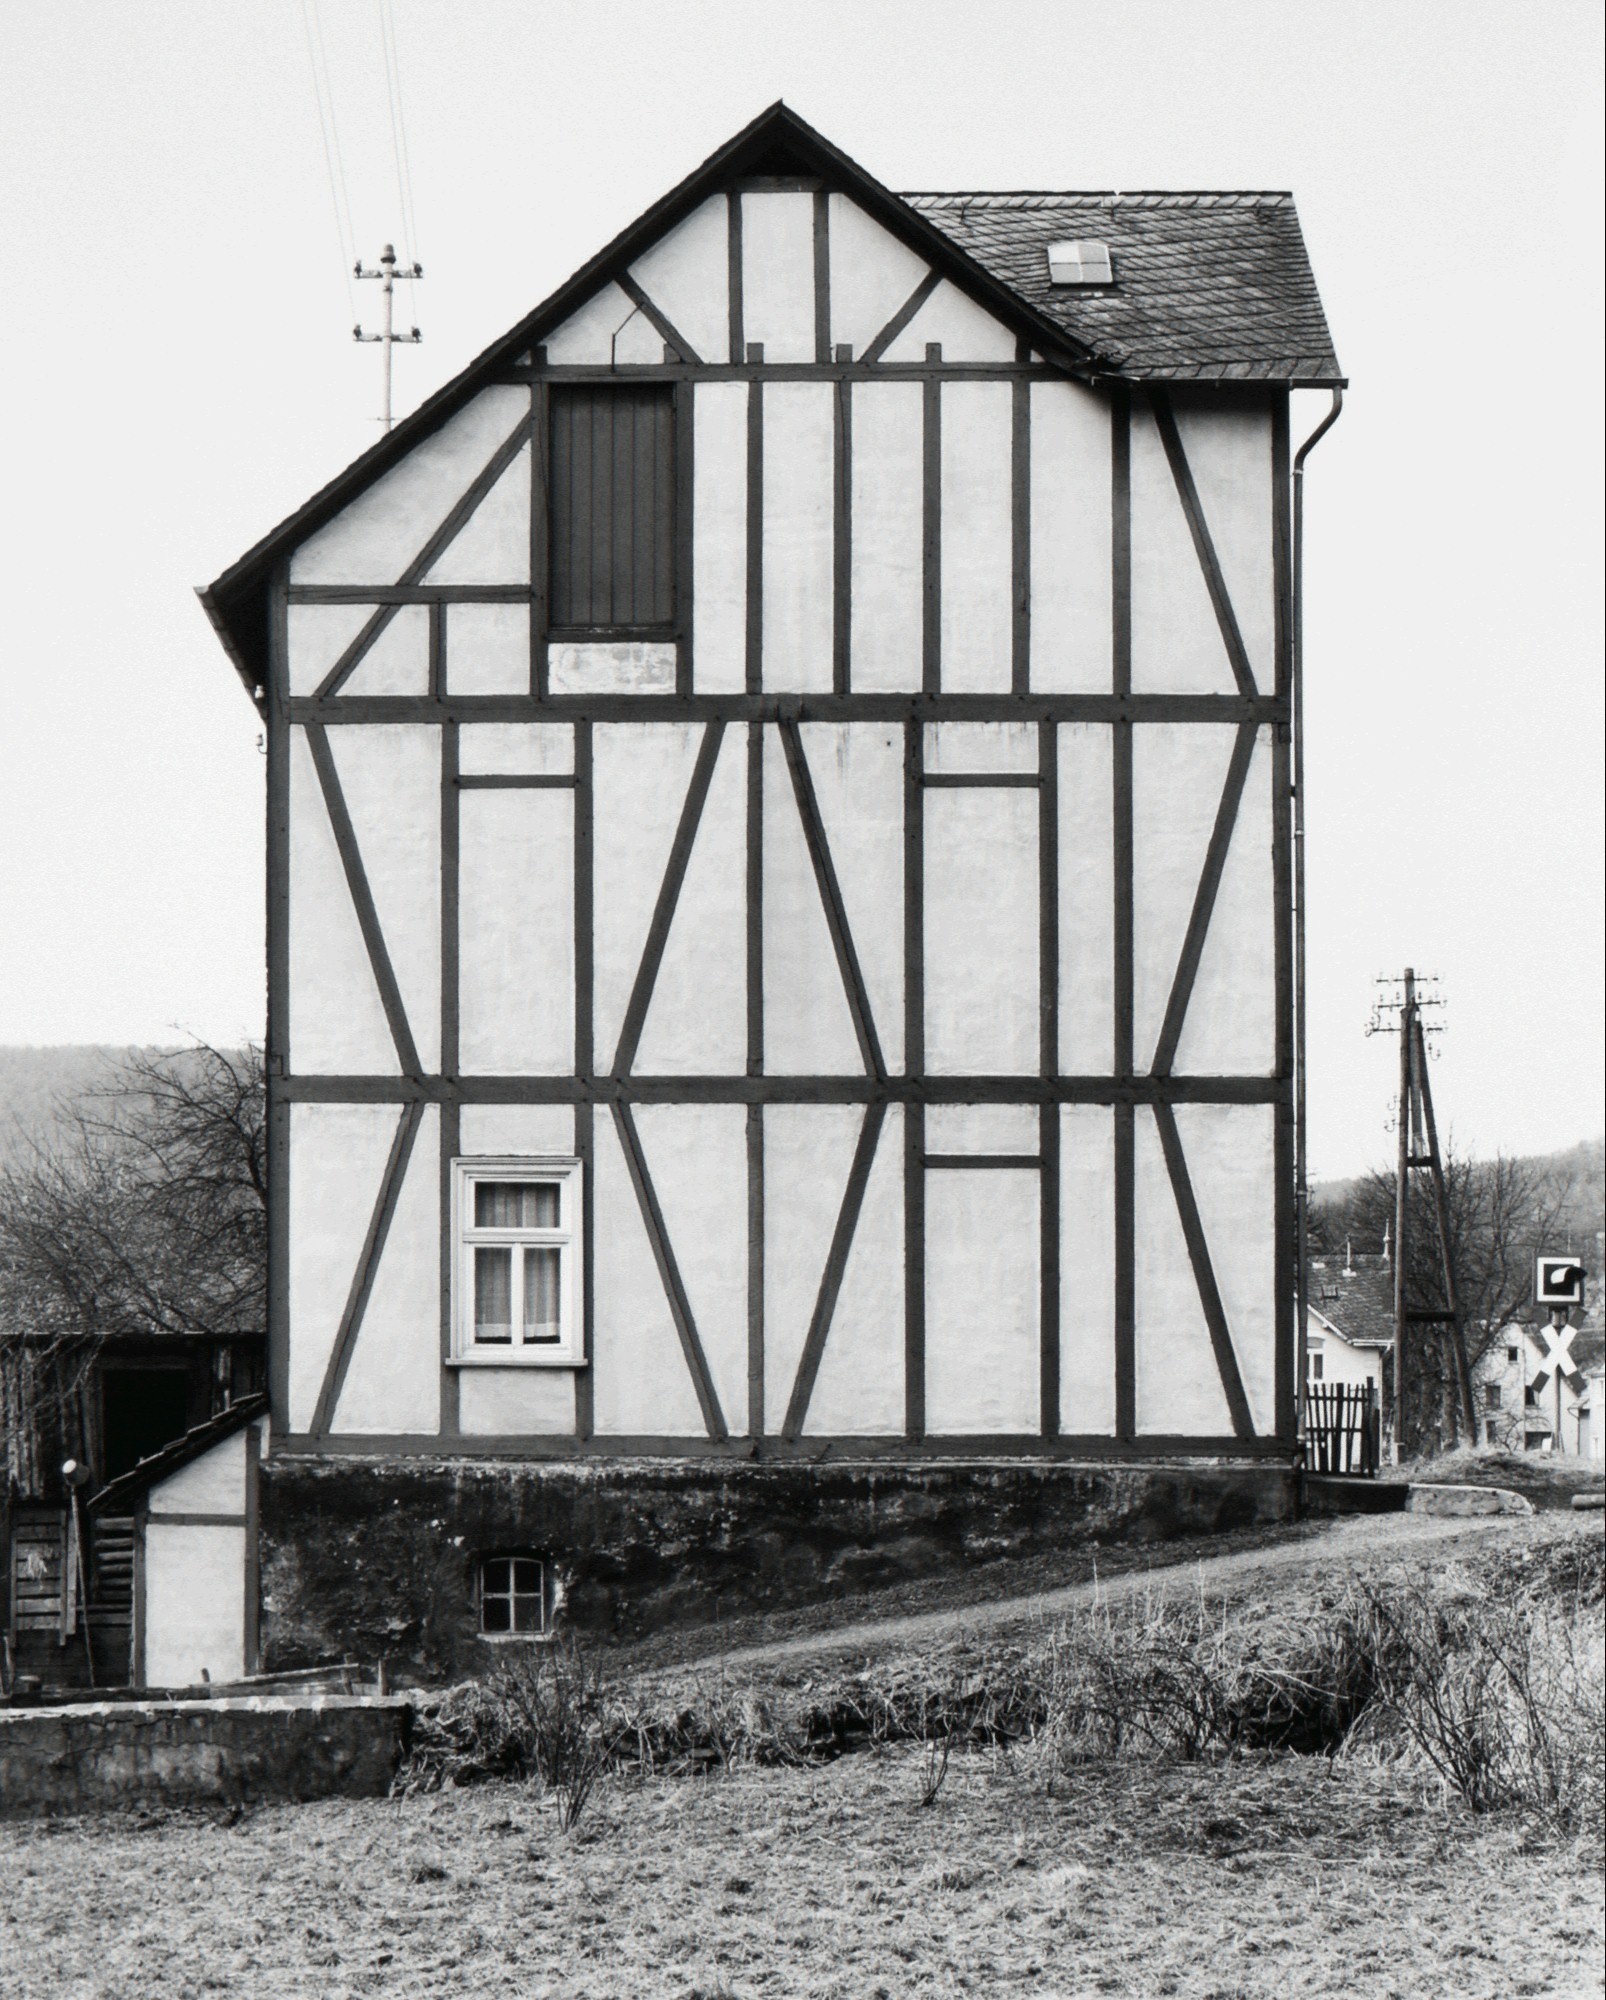 Каркасный дом, Нидерфишбах, 1962. Фотографы Бернд и Хилла Бехер